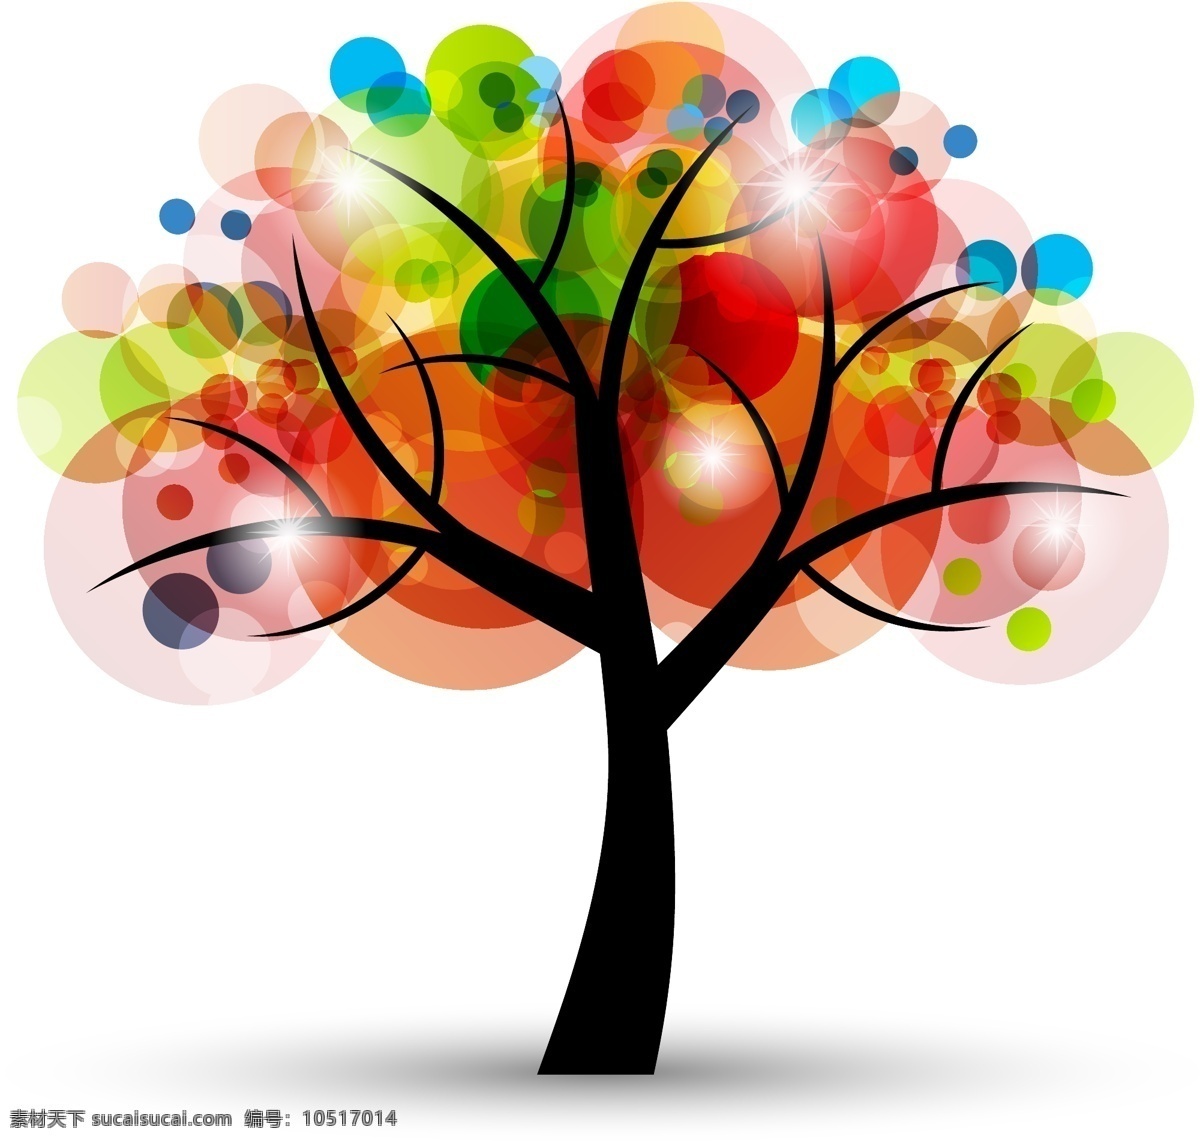 彩色 点光 其他设计 其他矢量 矢量素材 树 树叶 多彩 创意 矢量 模板下载 五彩 梦幻创意树 多彩树 多彩创意树